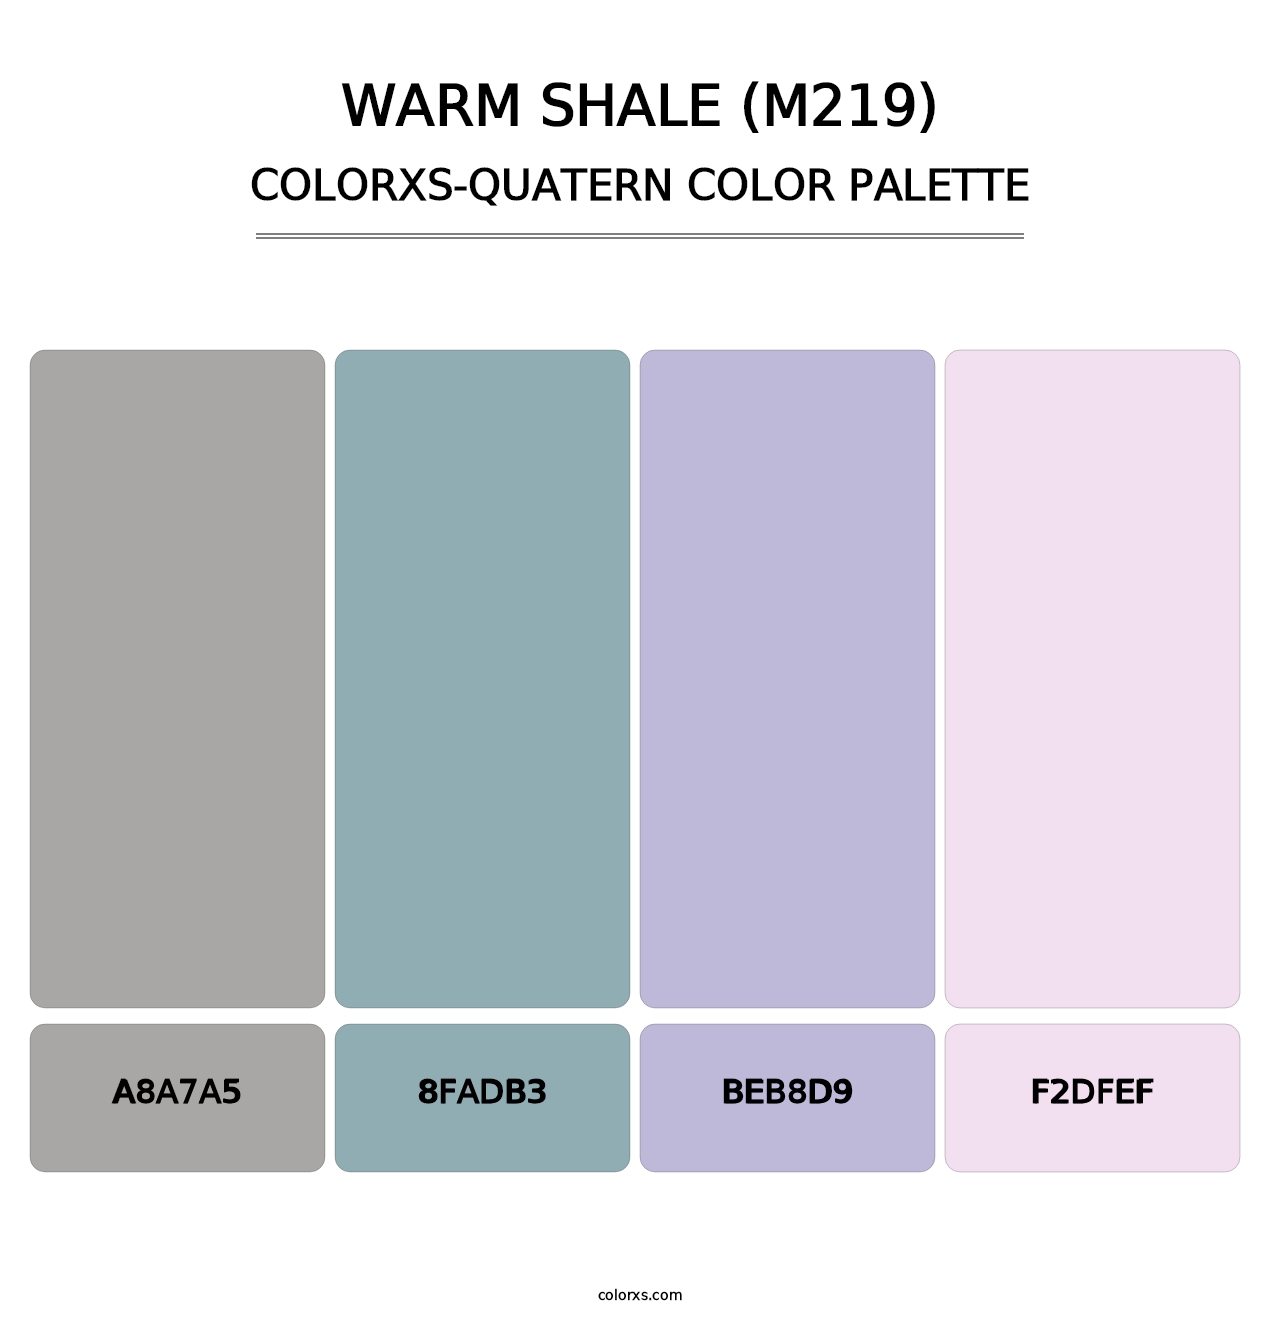 Warm Shale (M219) - Colorxs Quatern Palette